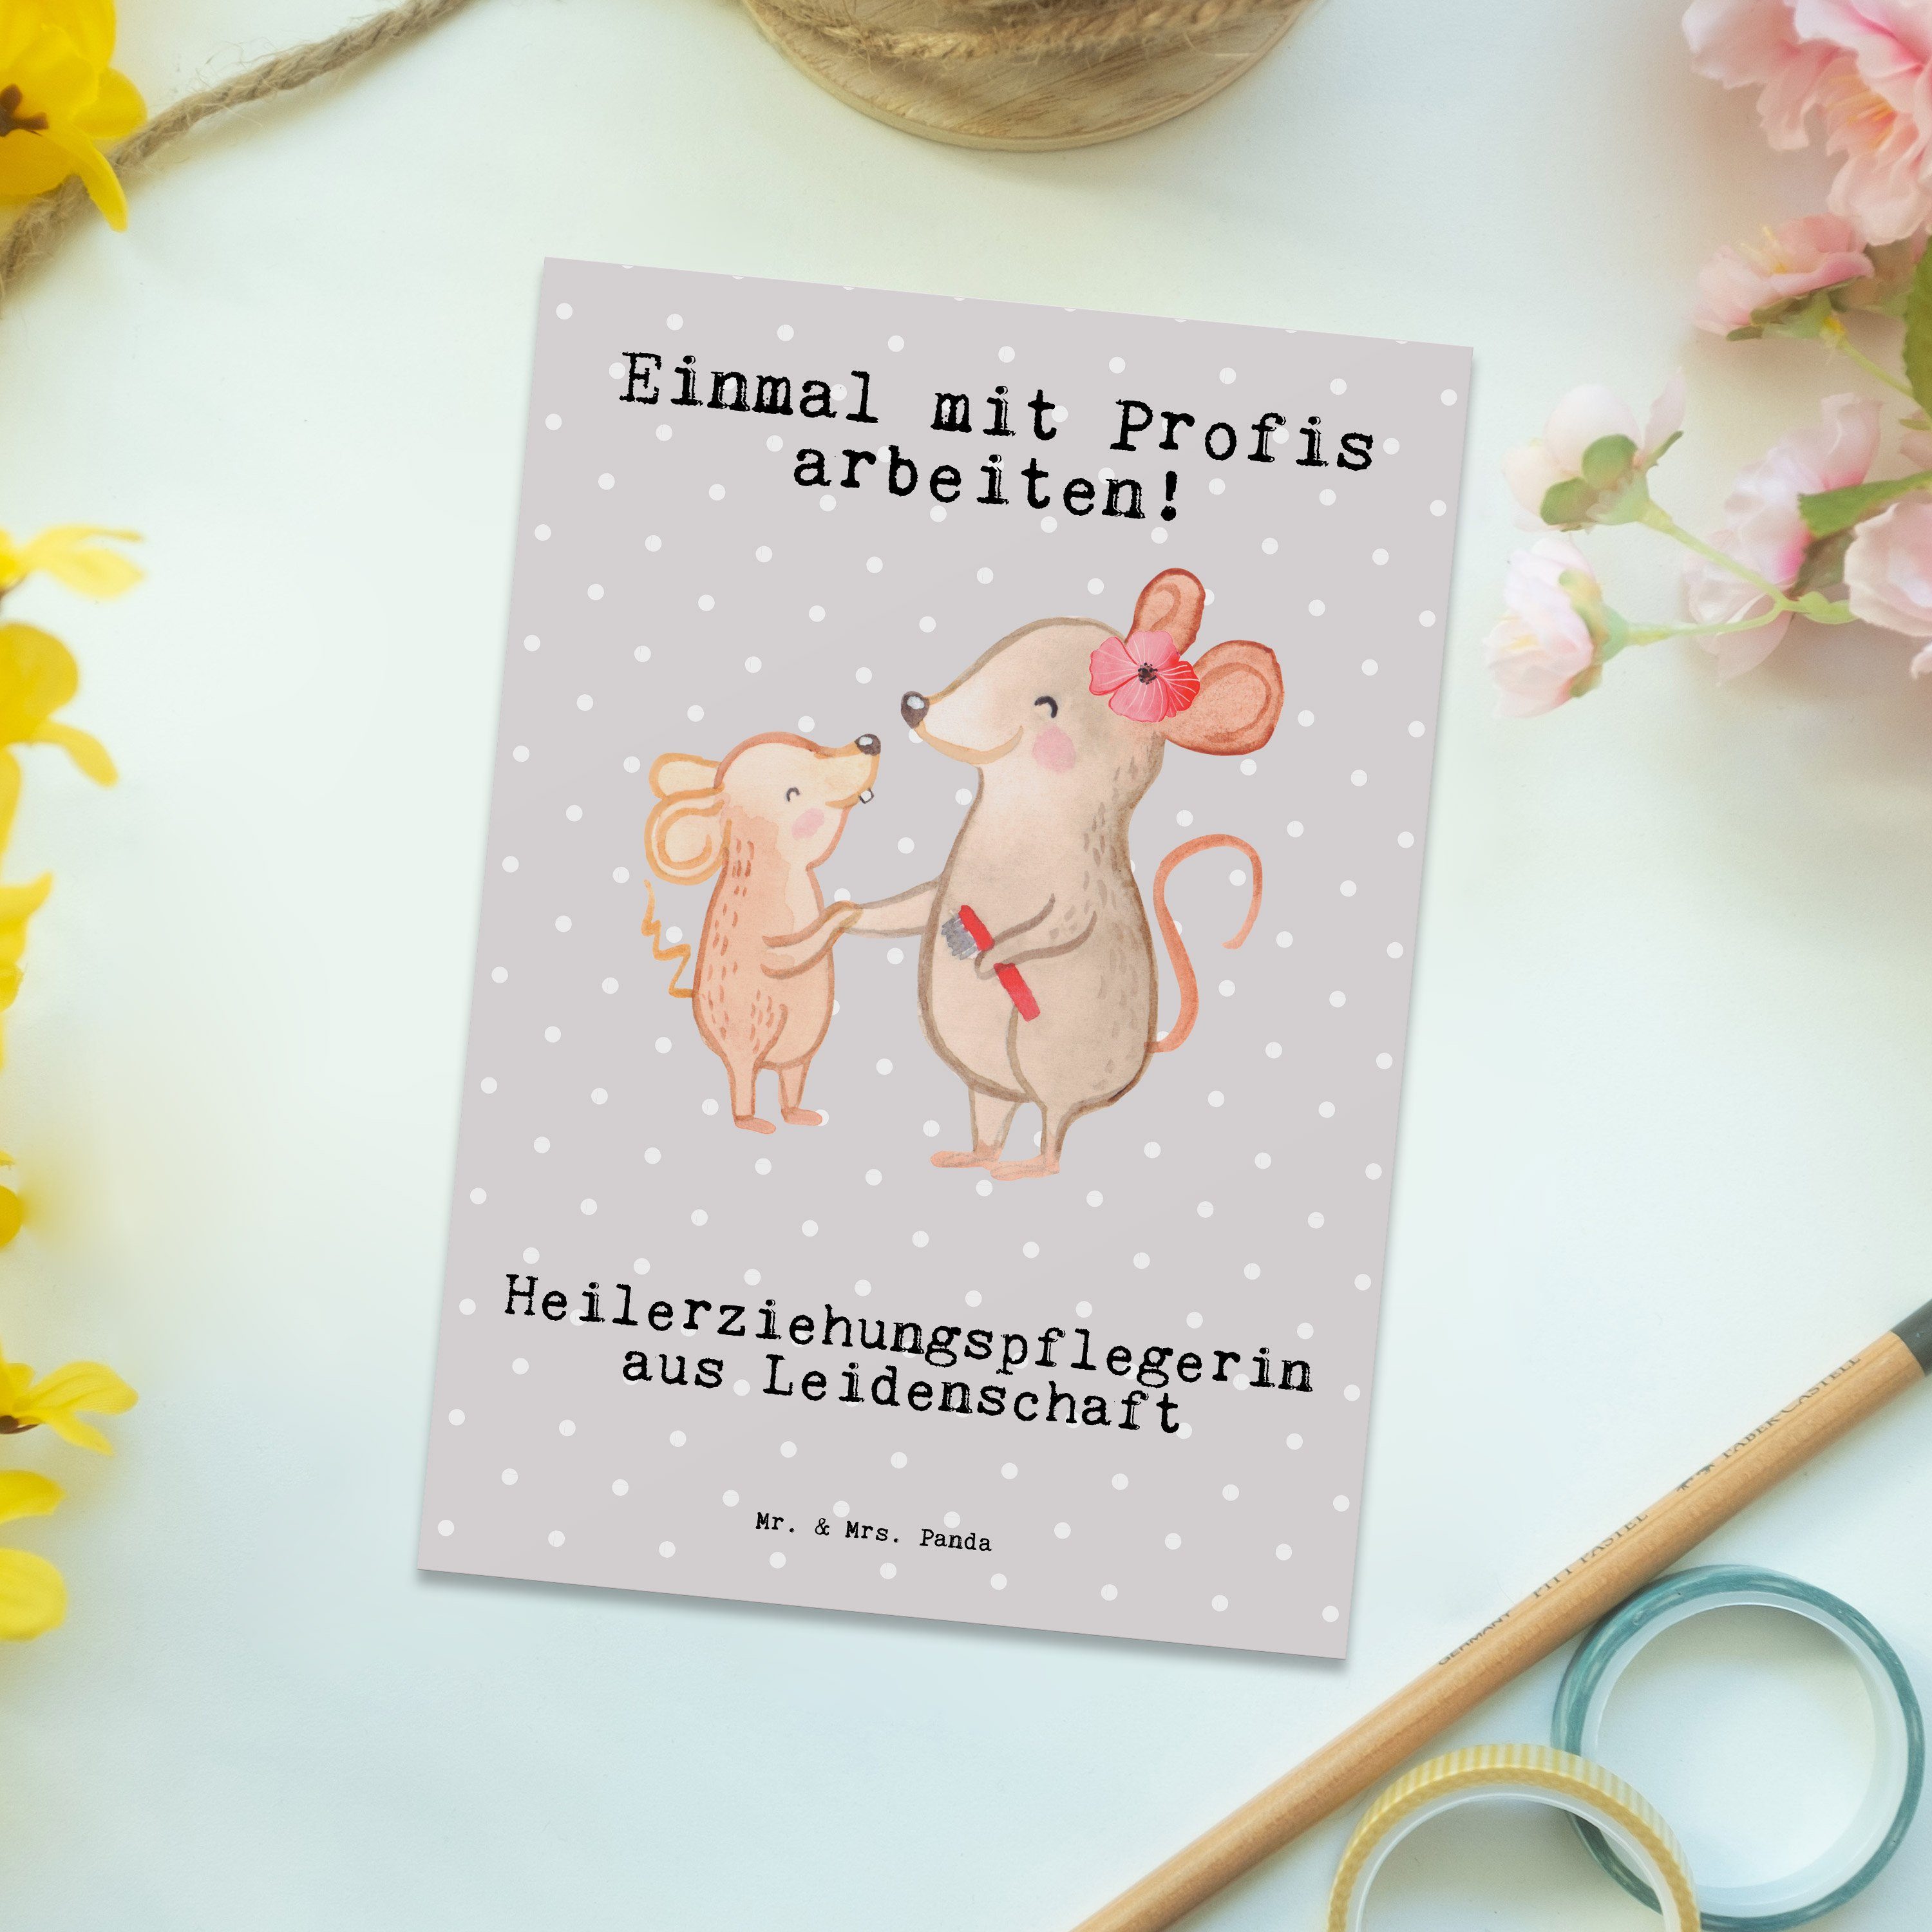 Mr. & Mrs. Heilerziehungspflegerin Grau aus Postkarte G Leidenschaft Geschenk, Pastell Panda - 